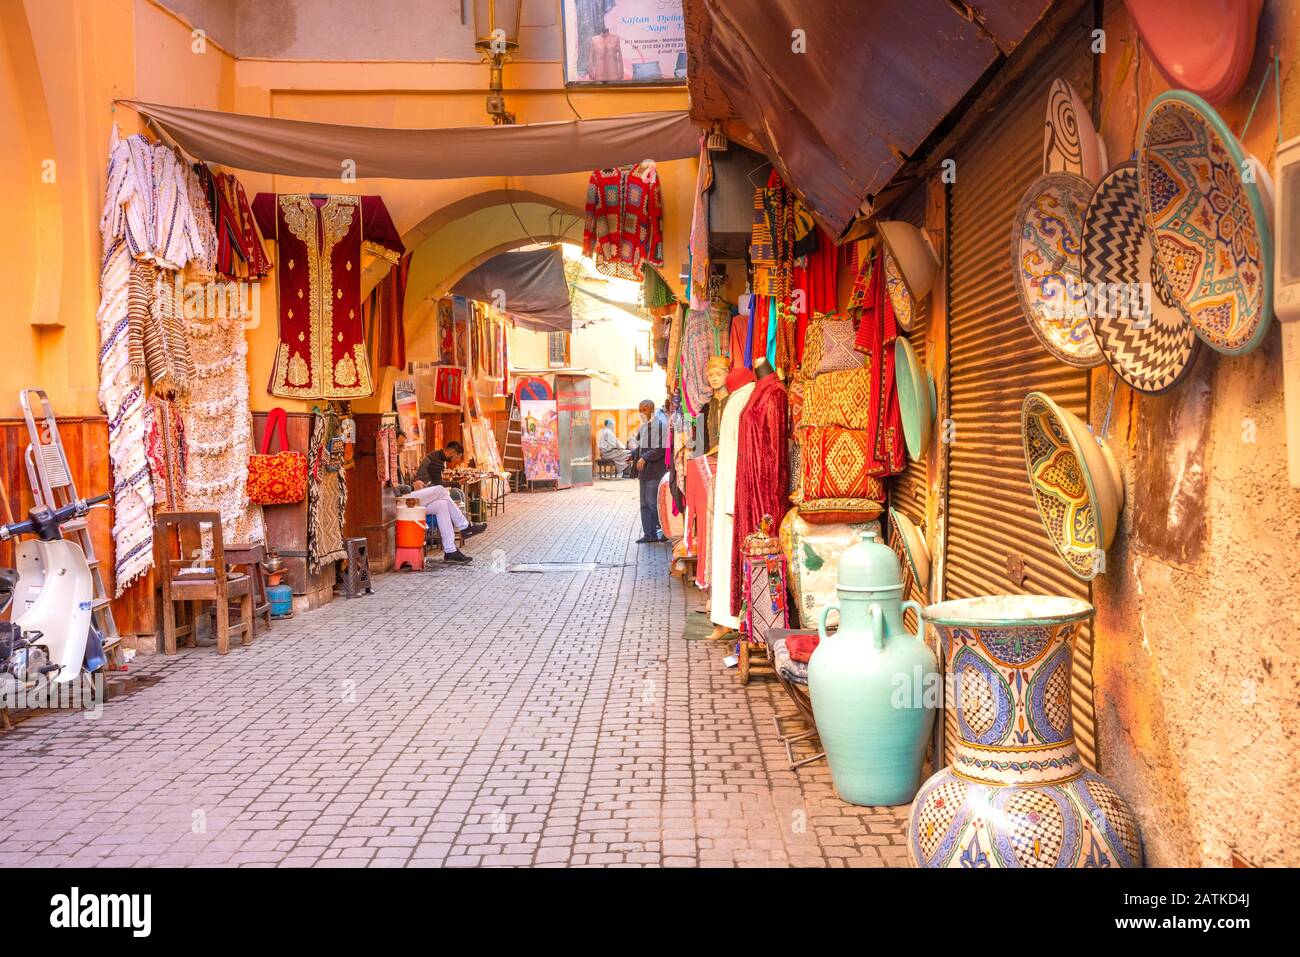 Marché marocain (souk) dans la vieille ville (médina) de Marrakech, Maroc Banque D'Images